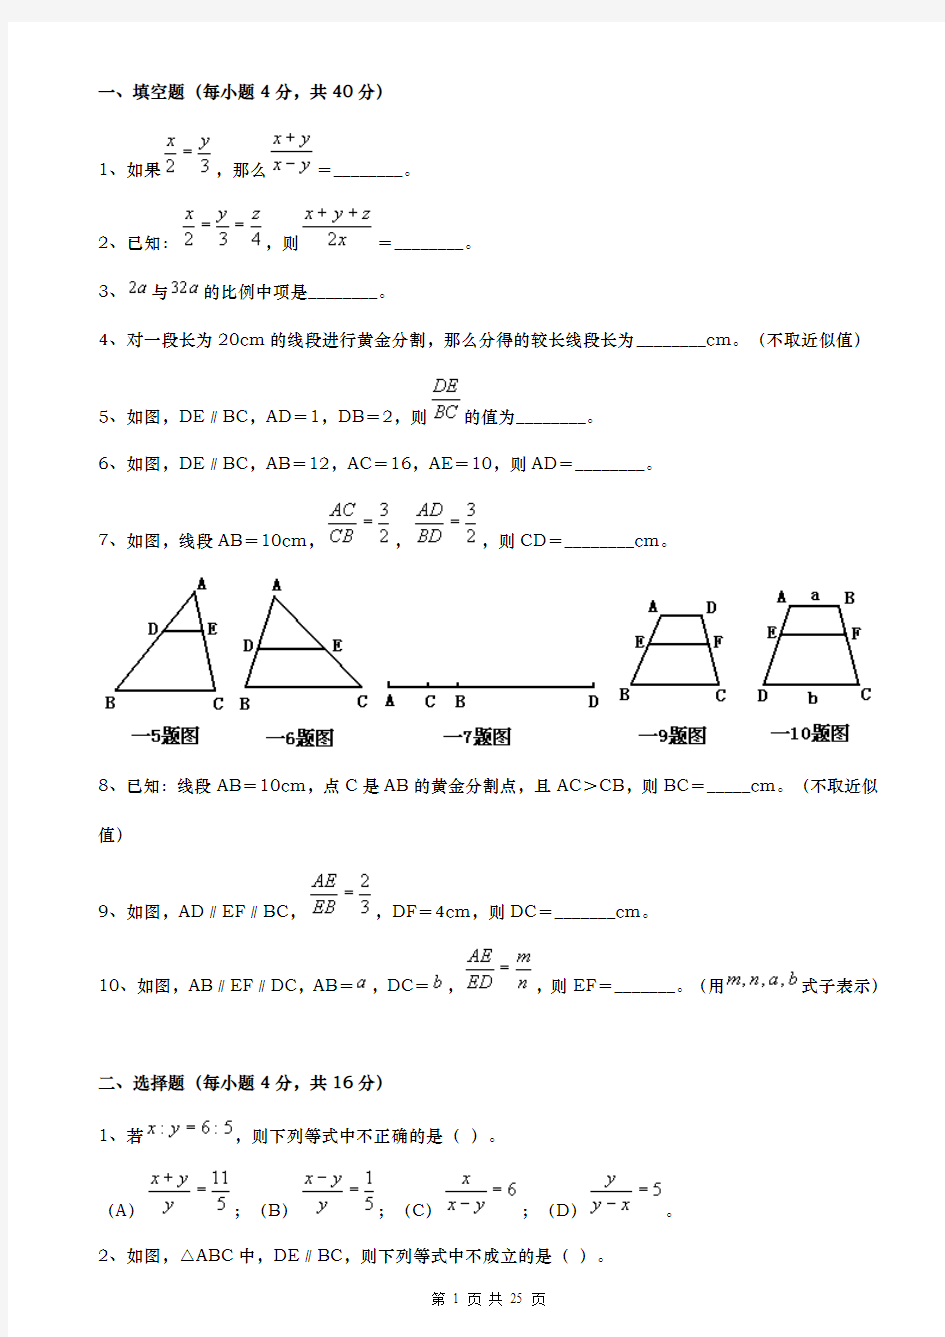 相似三角形测试题及答案(1)